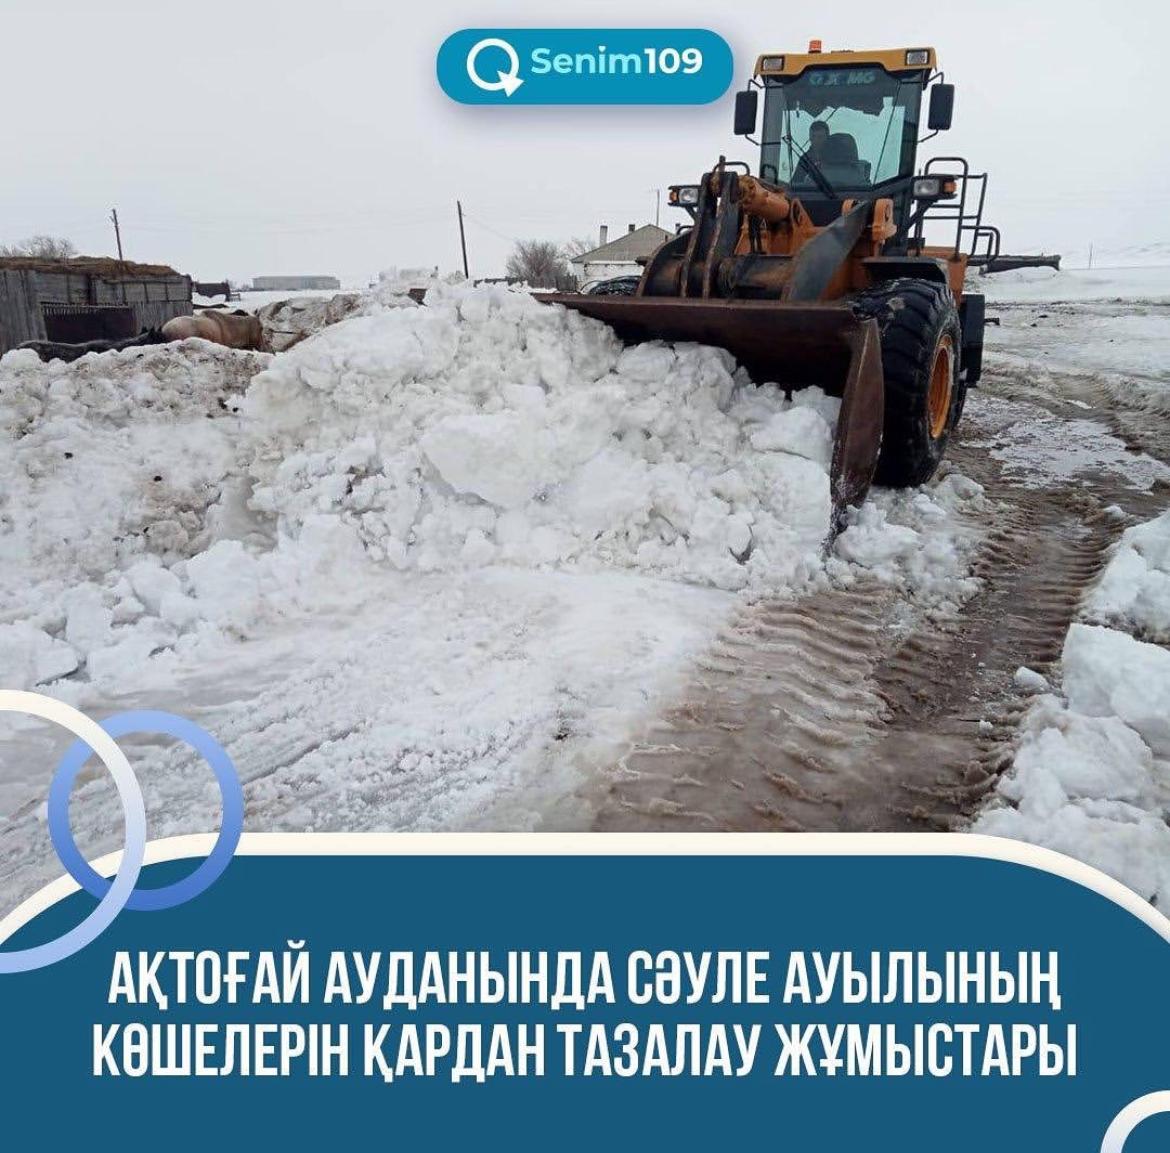 В Актогайском районе на улицах села Сауле «ИП Дмитрий» проводит расчистку снега погрузчиком и трактором МТЗ 82.